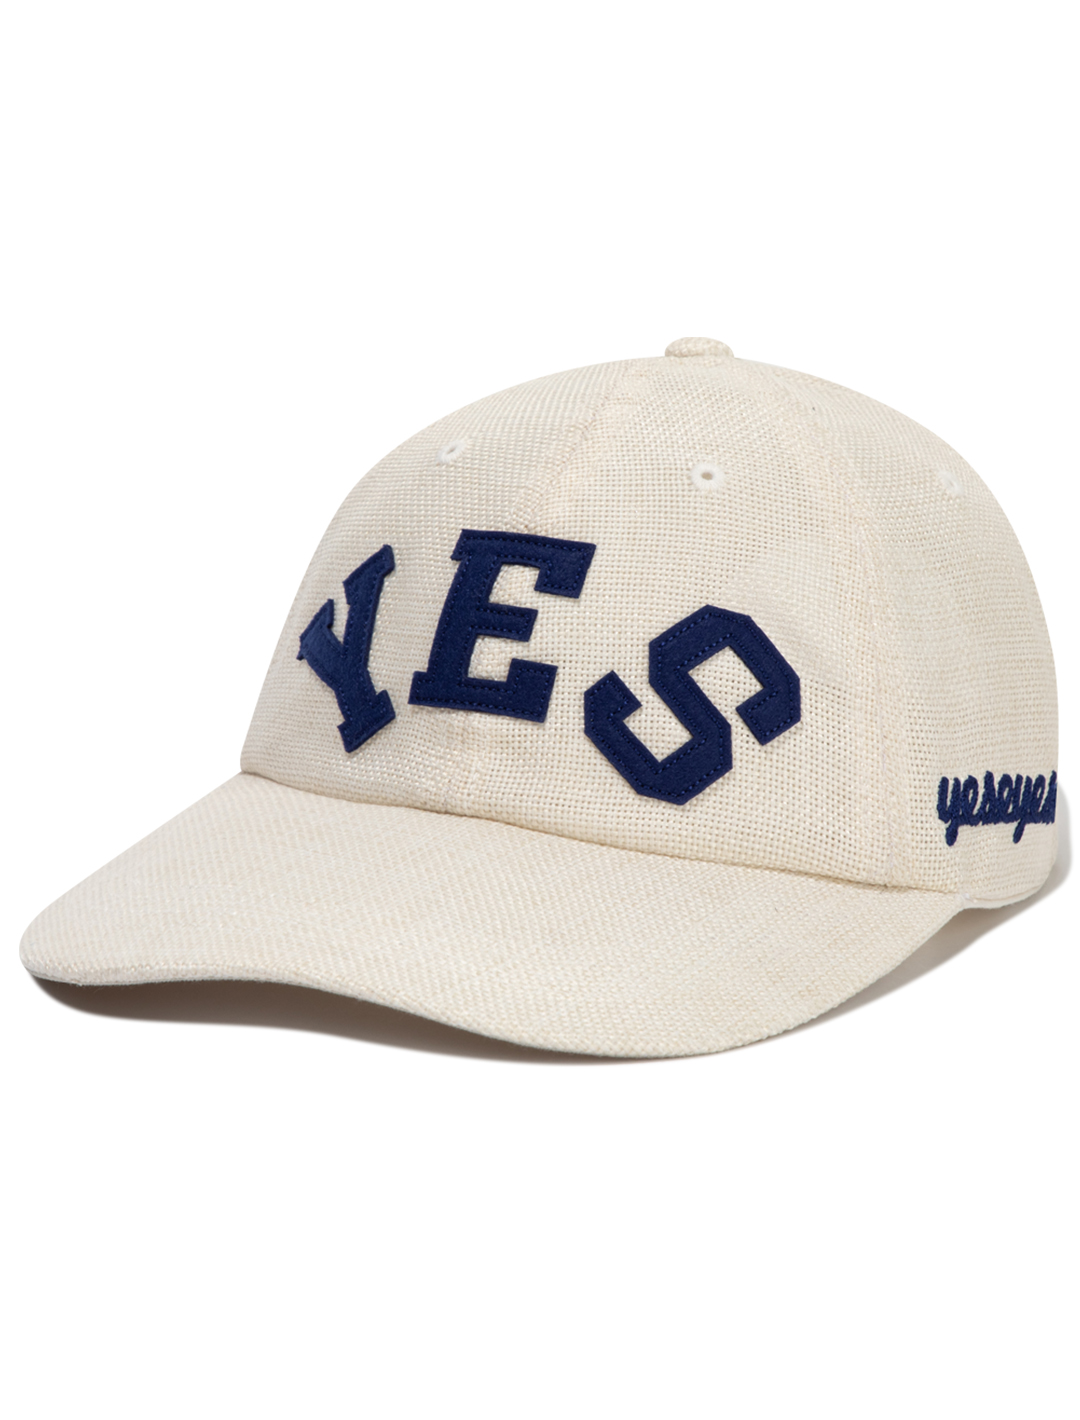 Y.E.S Straw Cap Cream